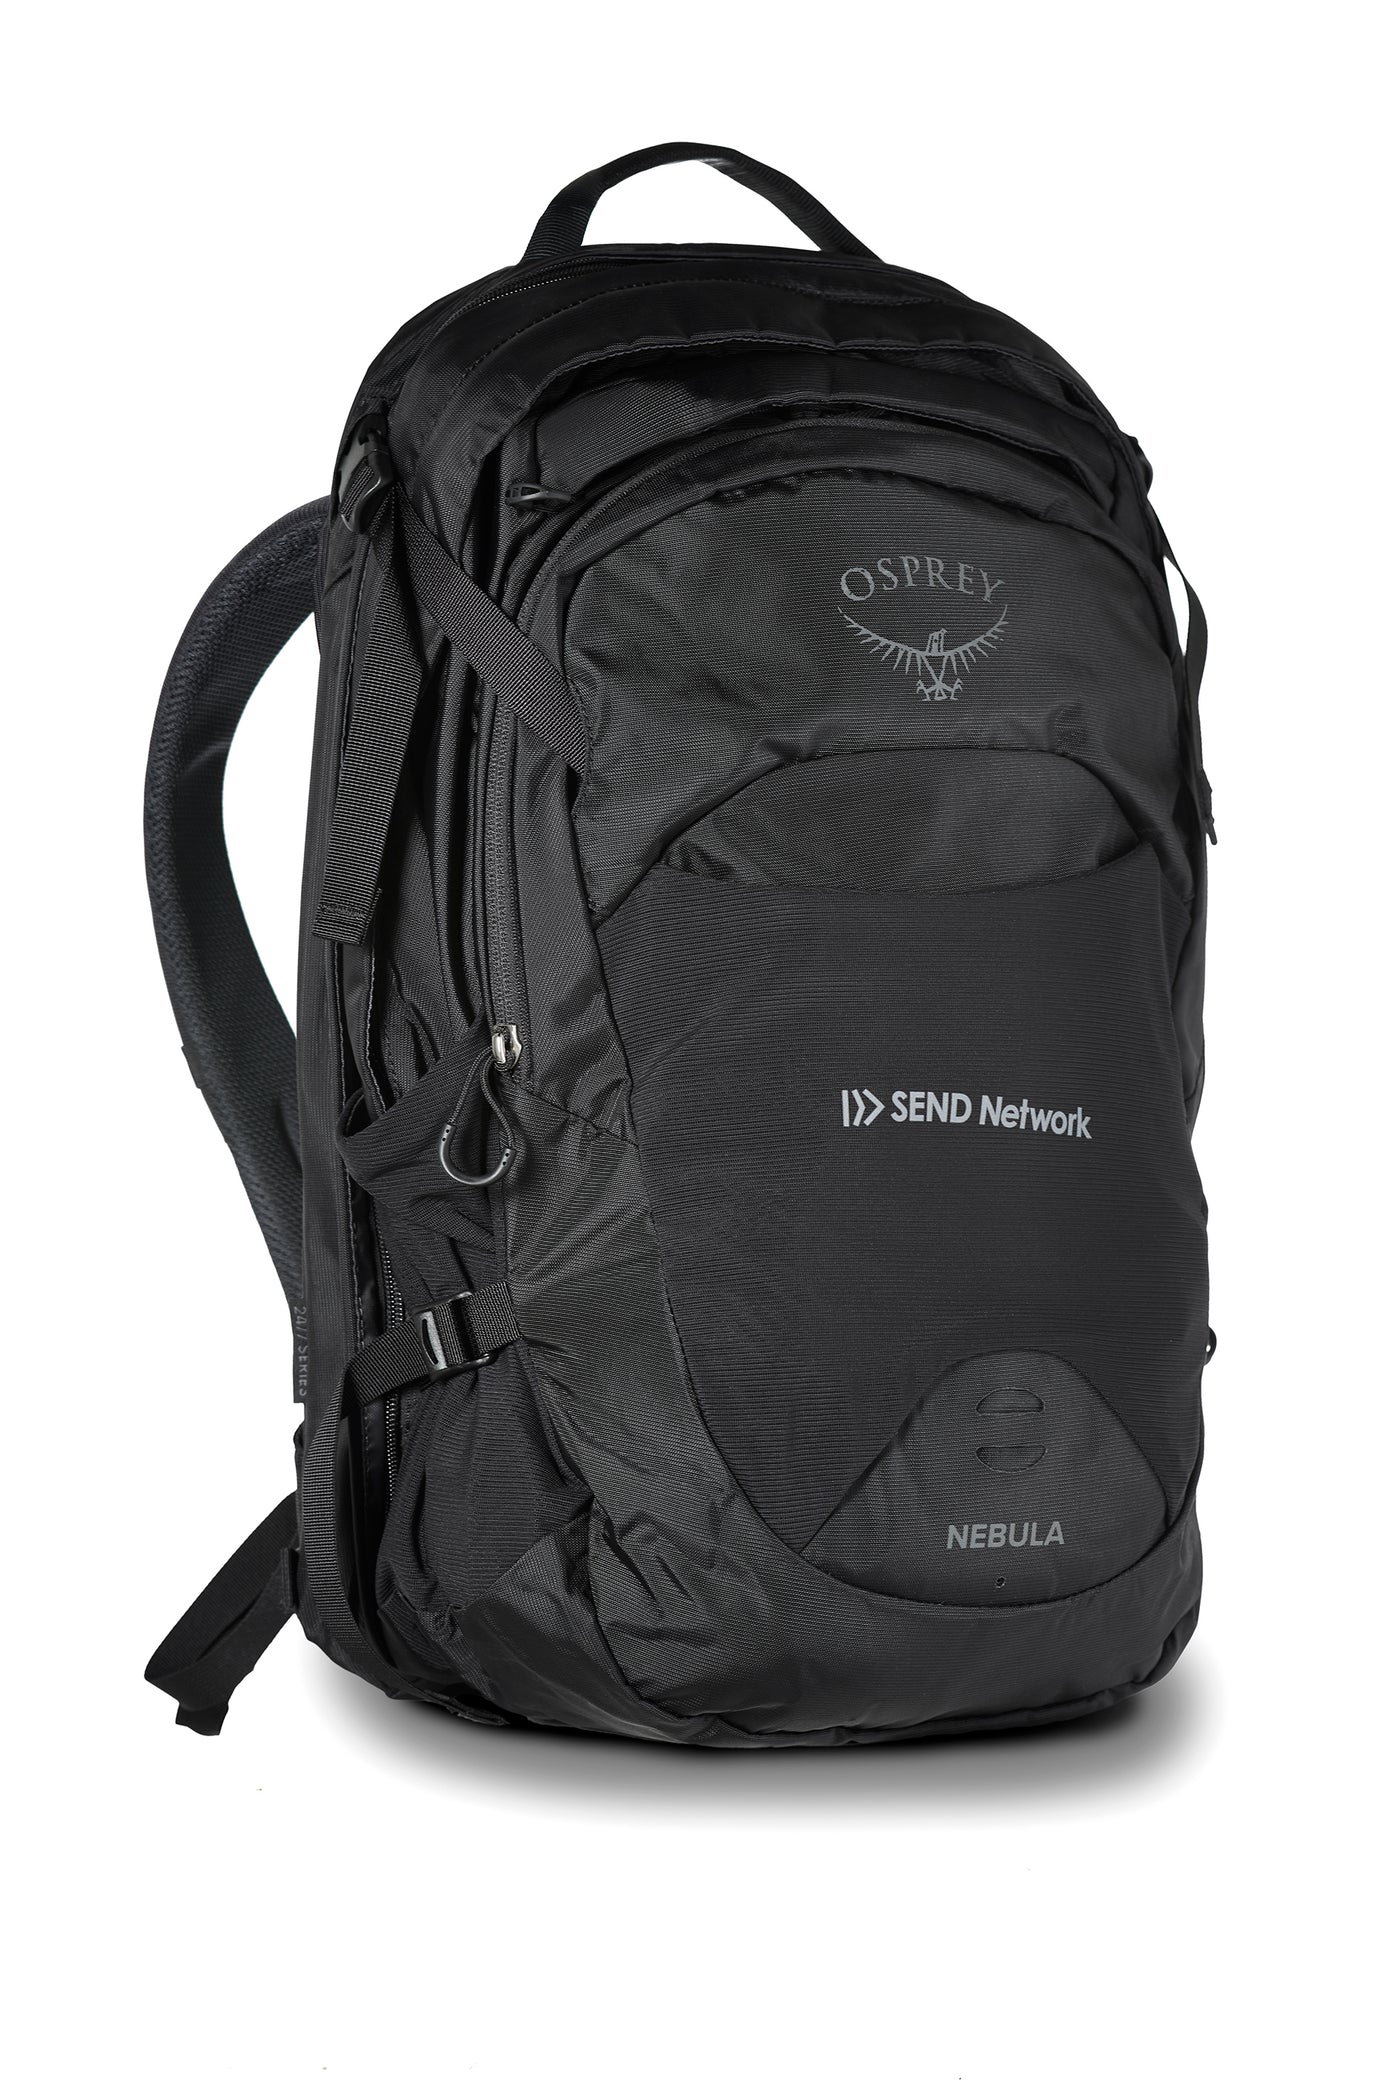 Osprey Packs Hikelite 26L Backpack - Accessories